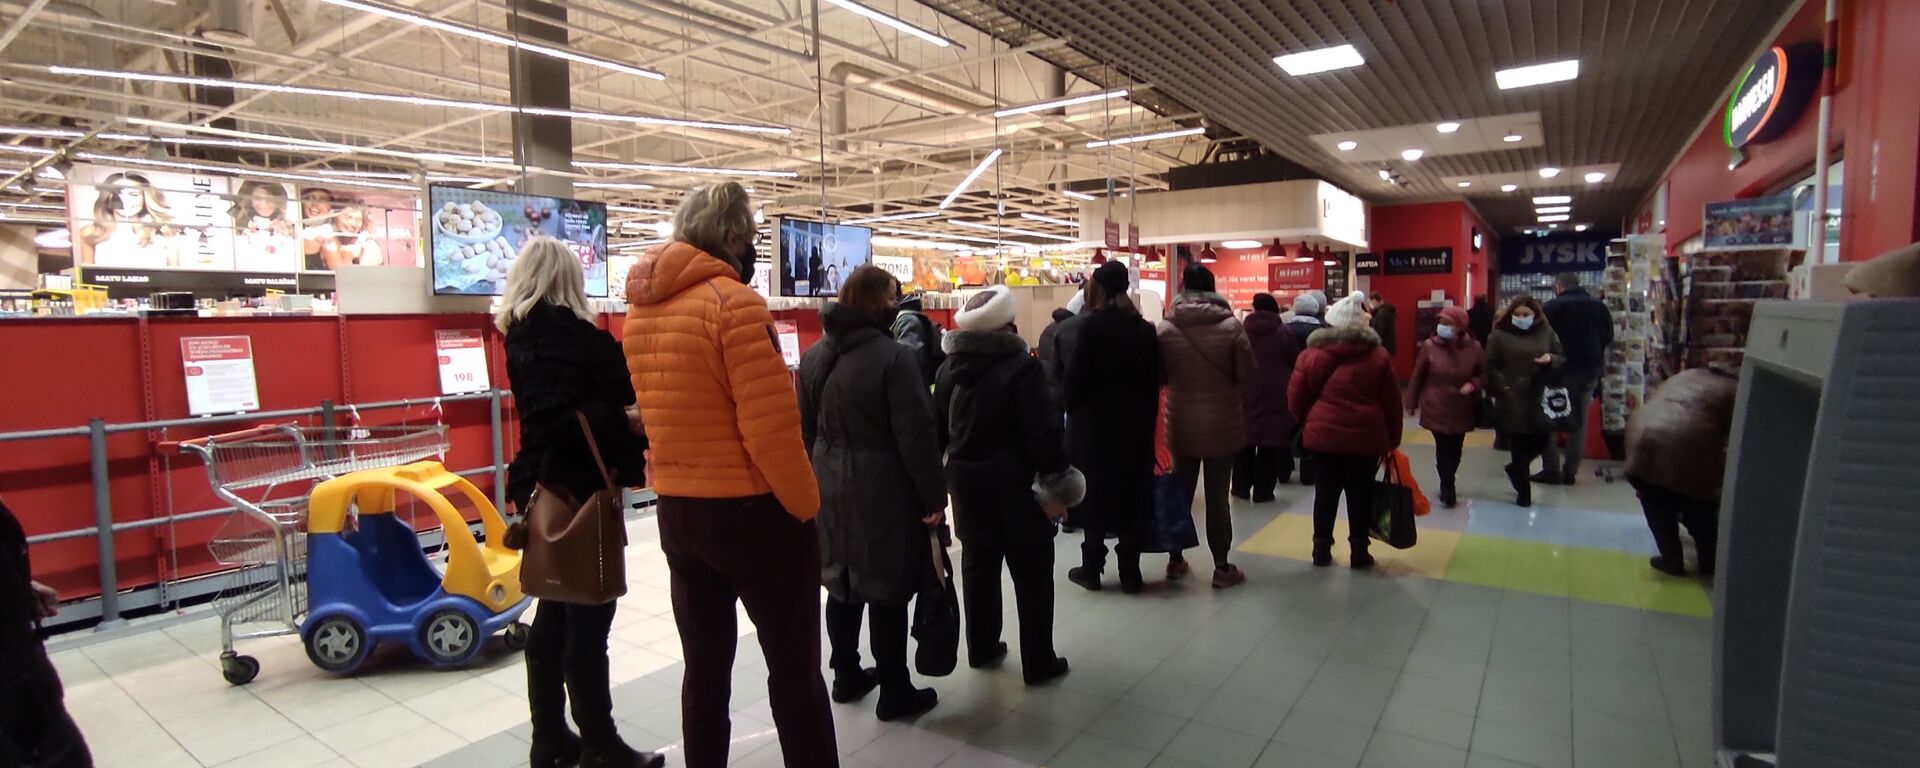 Очередь на вход в торговый зал супермаркета Rimi в Риге - Sputnik Latvija, 1920, 10.02.2021